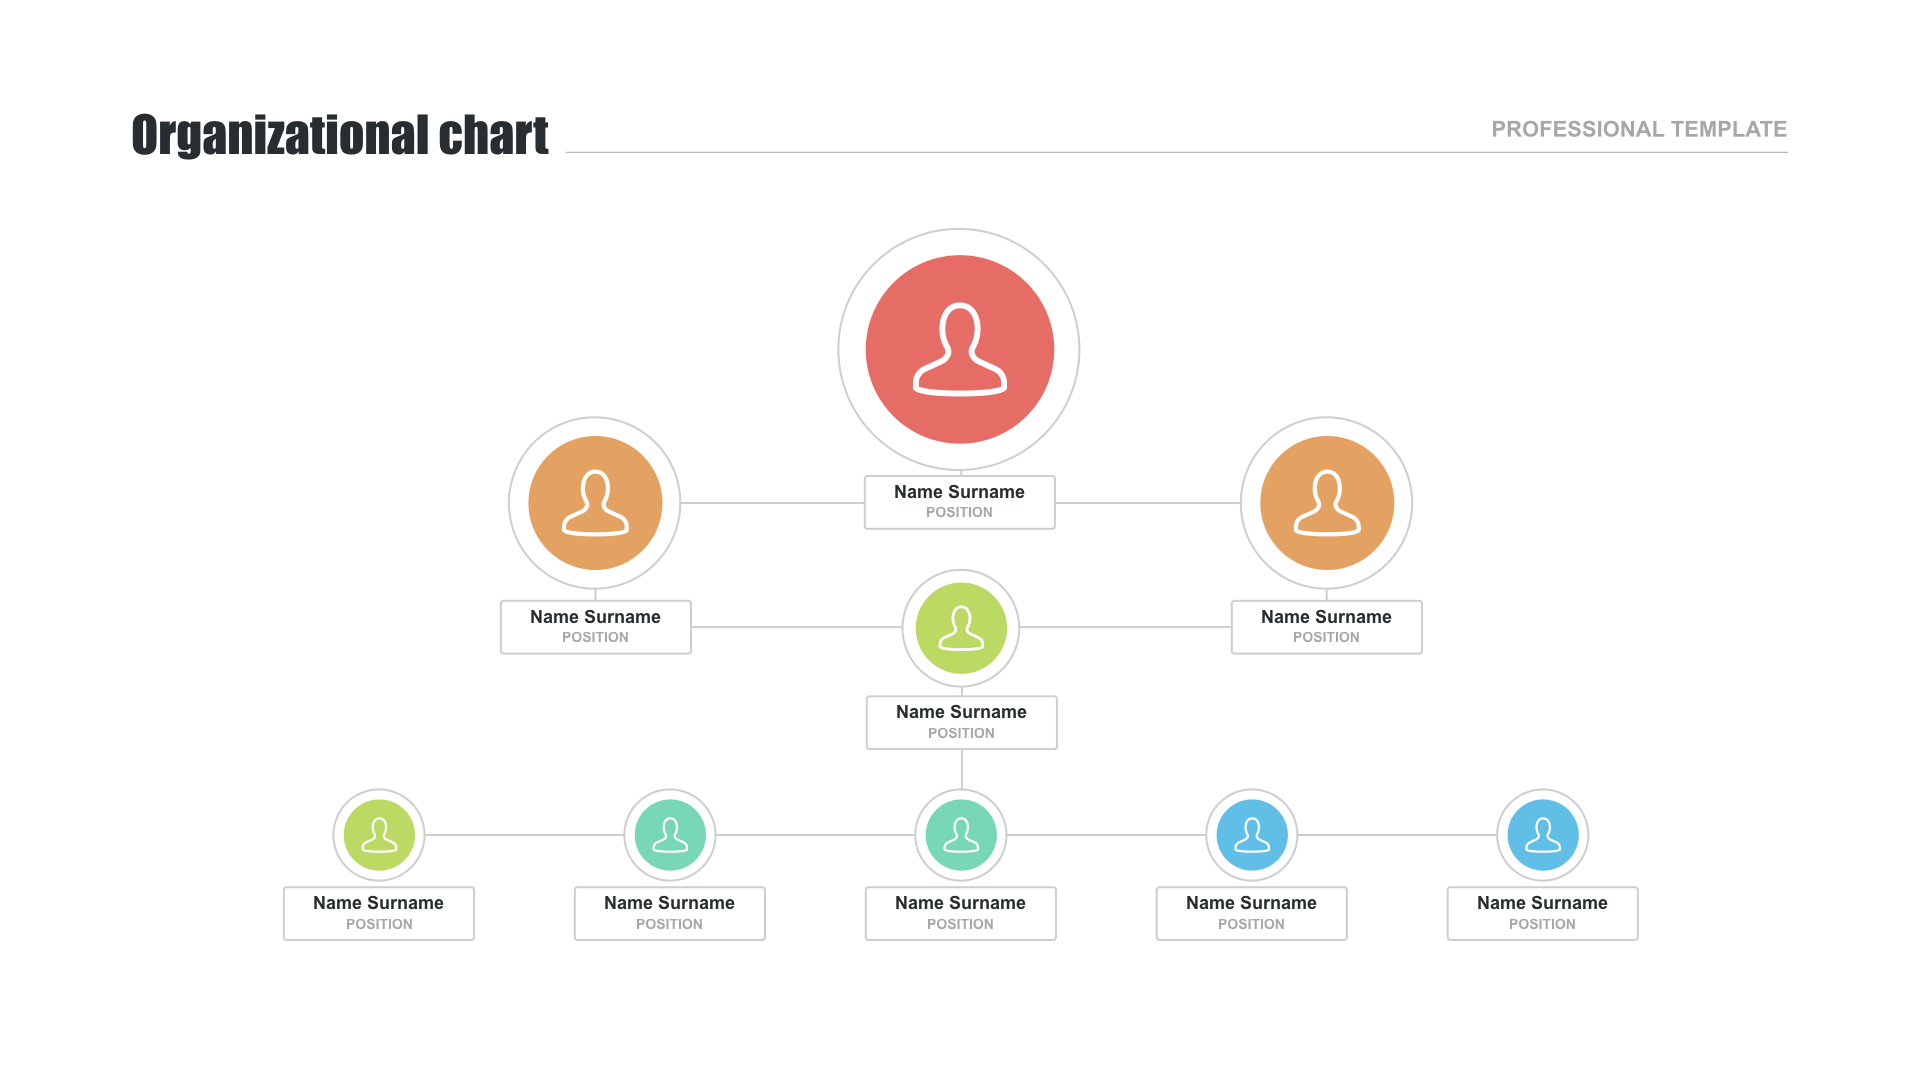 Free organizational chart templates